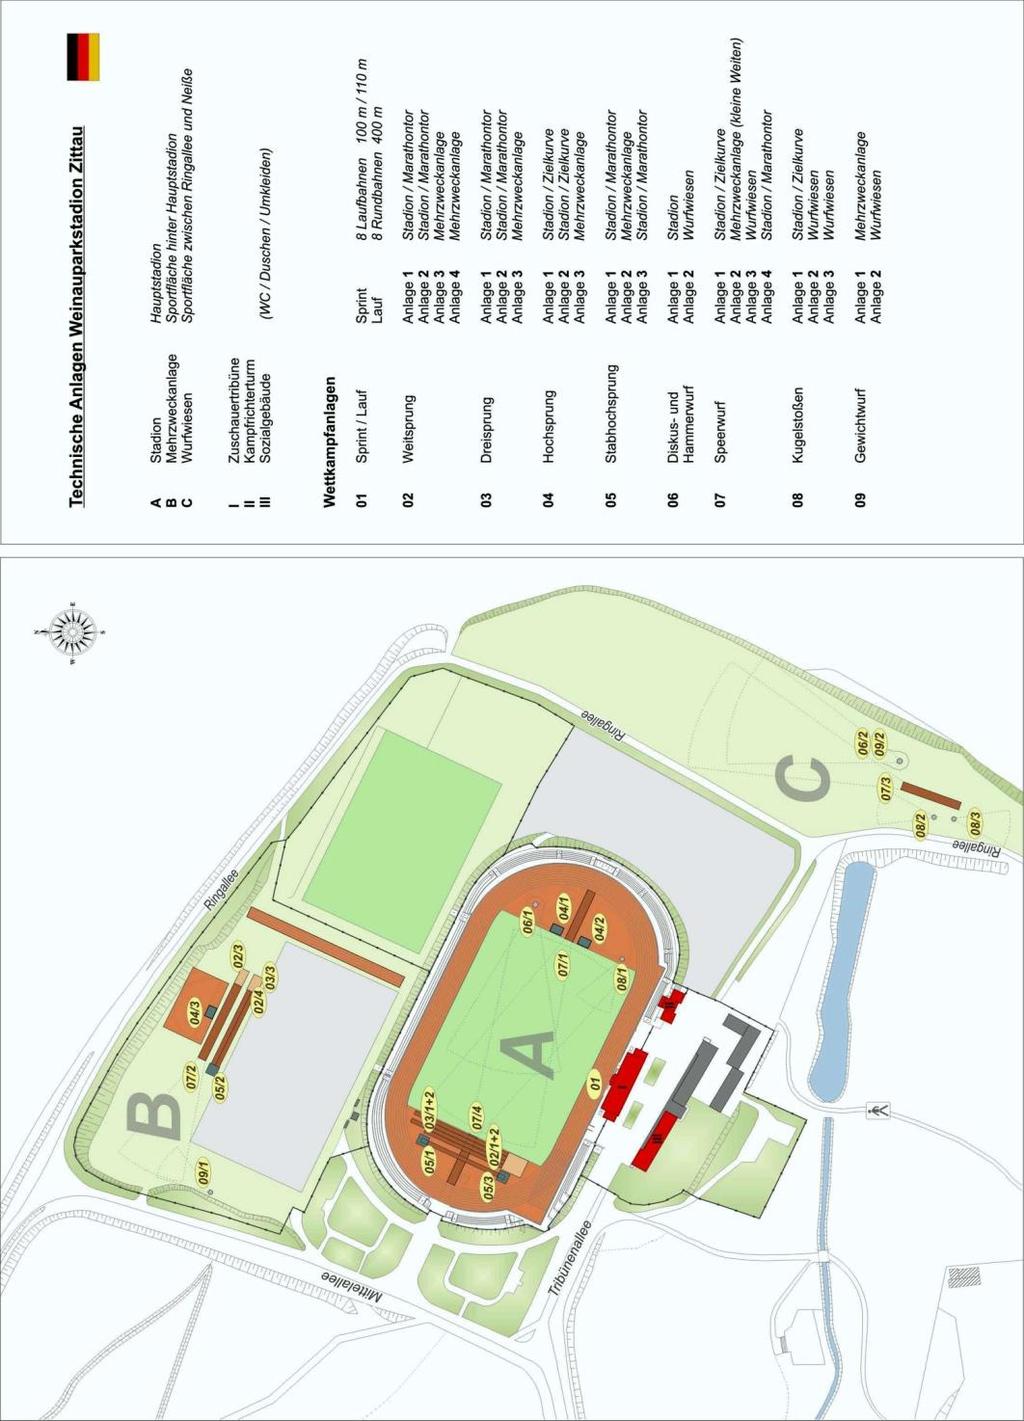 PLAN STADIONU Skok wzwyż 1+2 (A 04/1 i 2) i skok w dal 1+2 (A 02/1 i 2) odbywają się na stadionie, i skok w dal 3+4 na obiekt sportowy wielofunkcyjne (B 02/3 und 4).